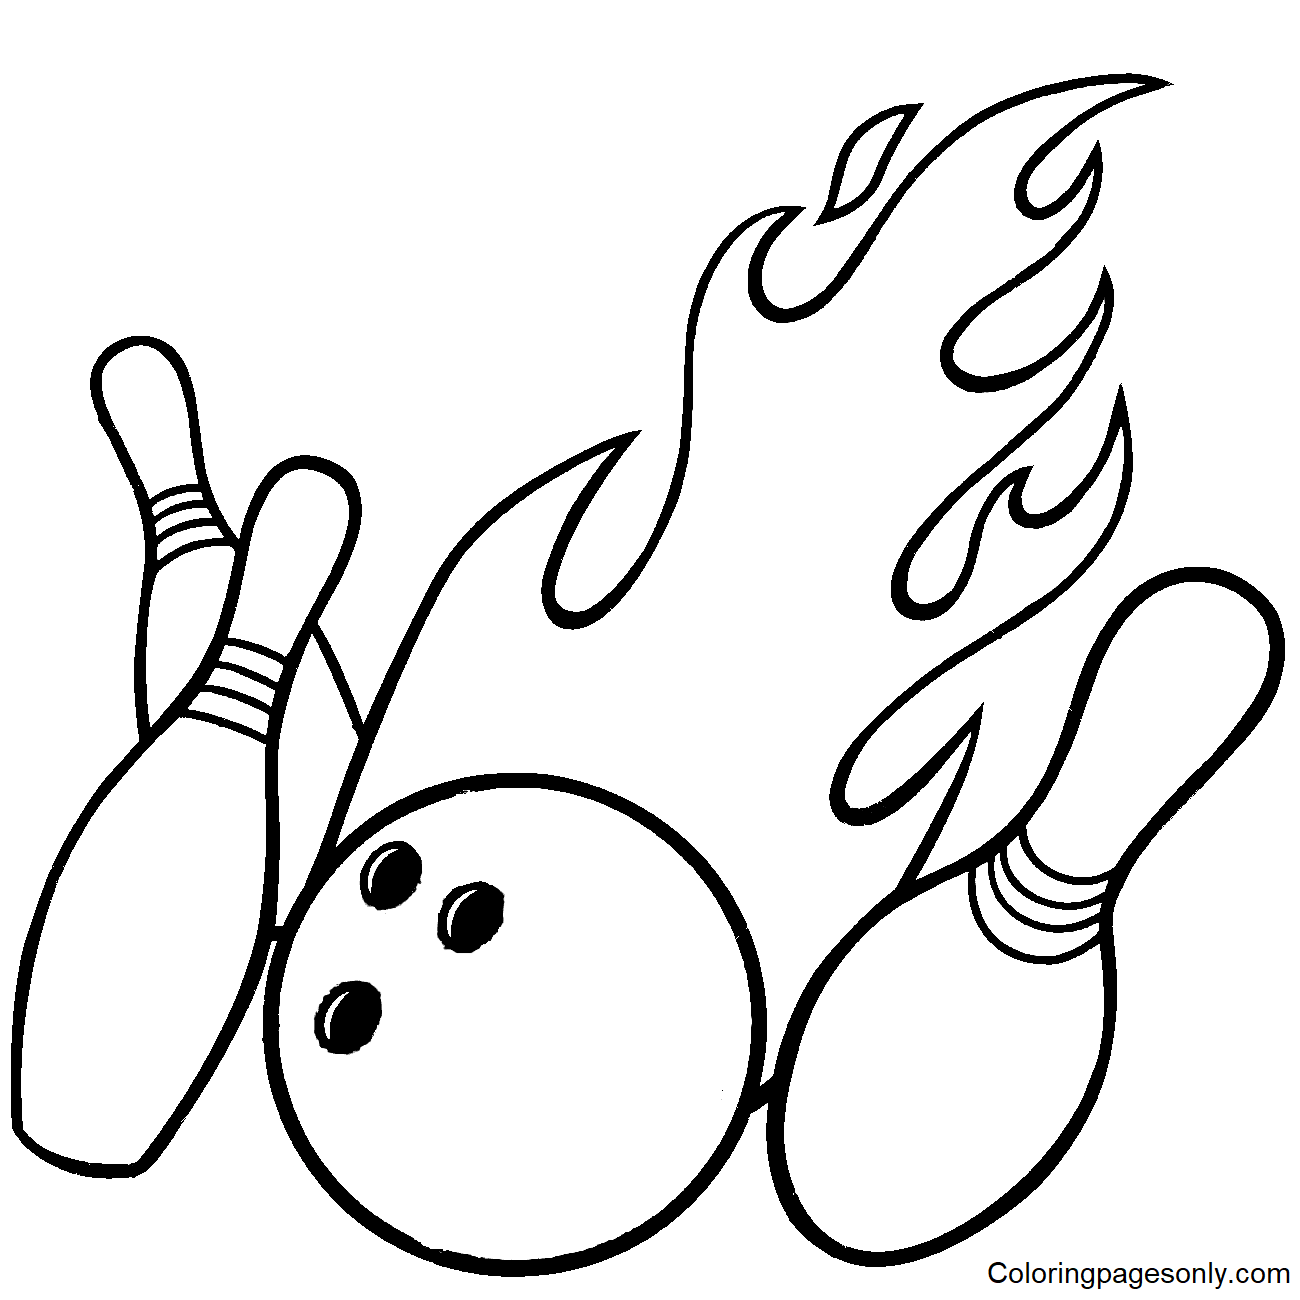 Bowling Pins and Flaming Ball Coloring Page